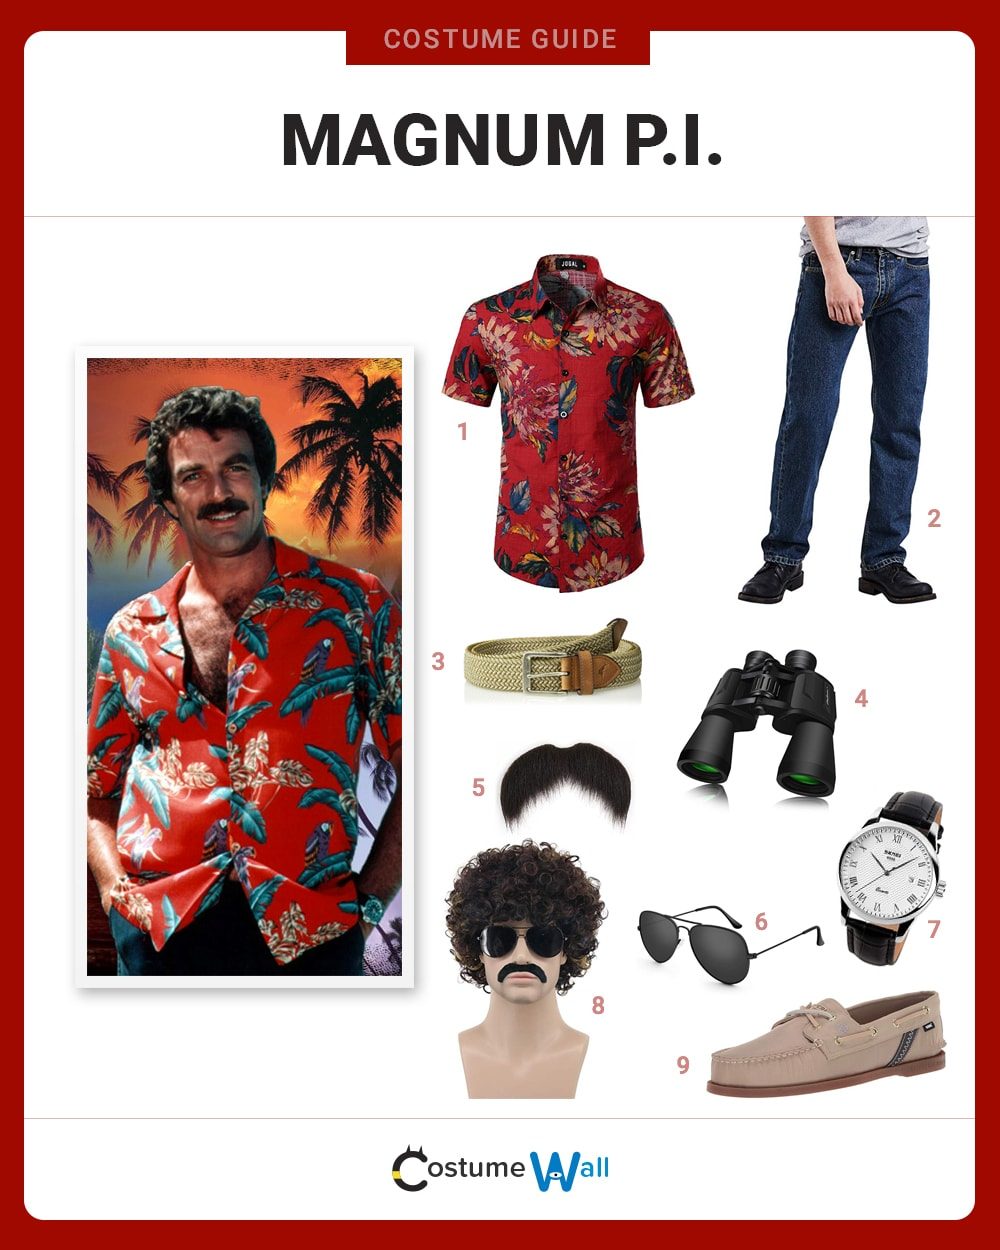 Magnum pi costume